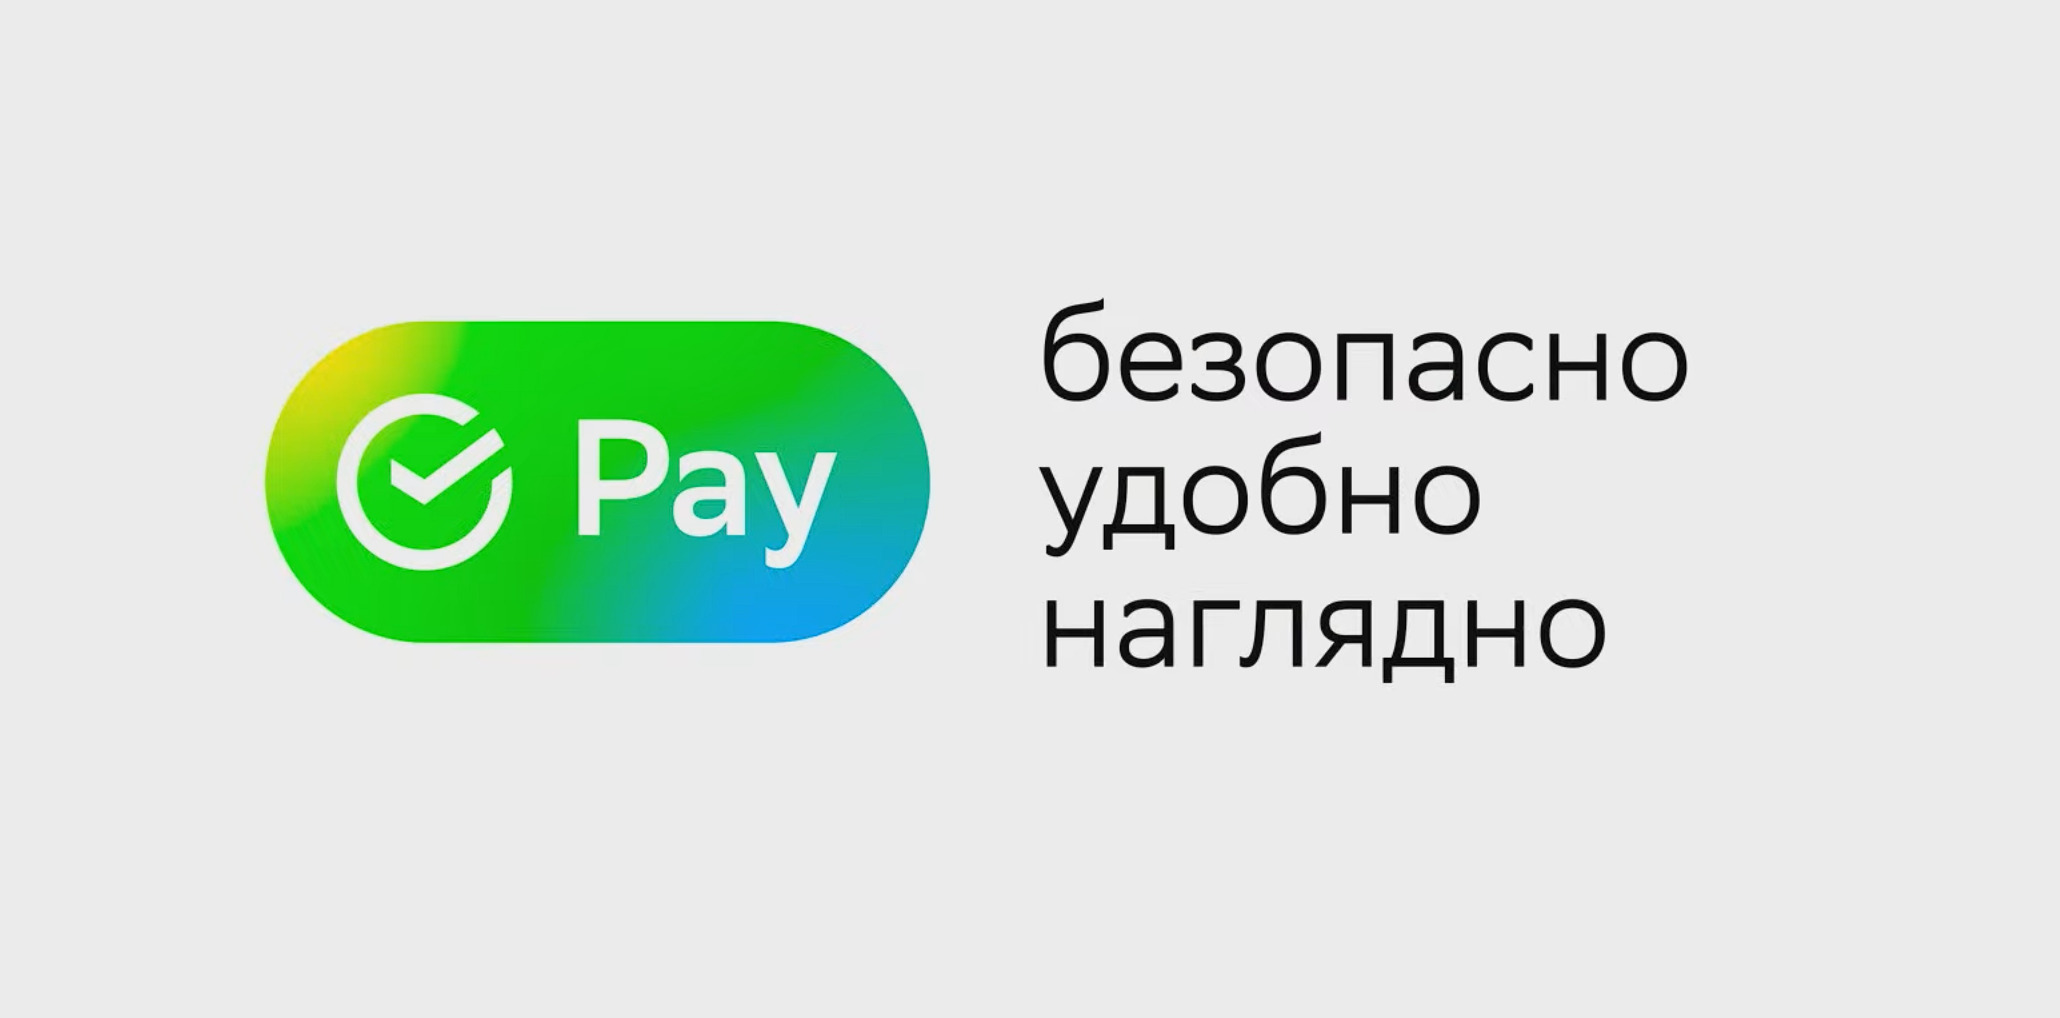 Пензенцы активно используют SberPay для покупок в интернете